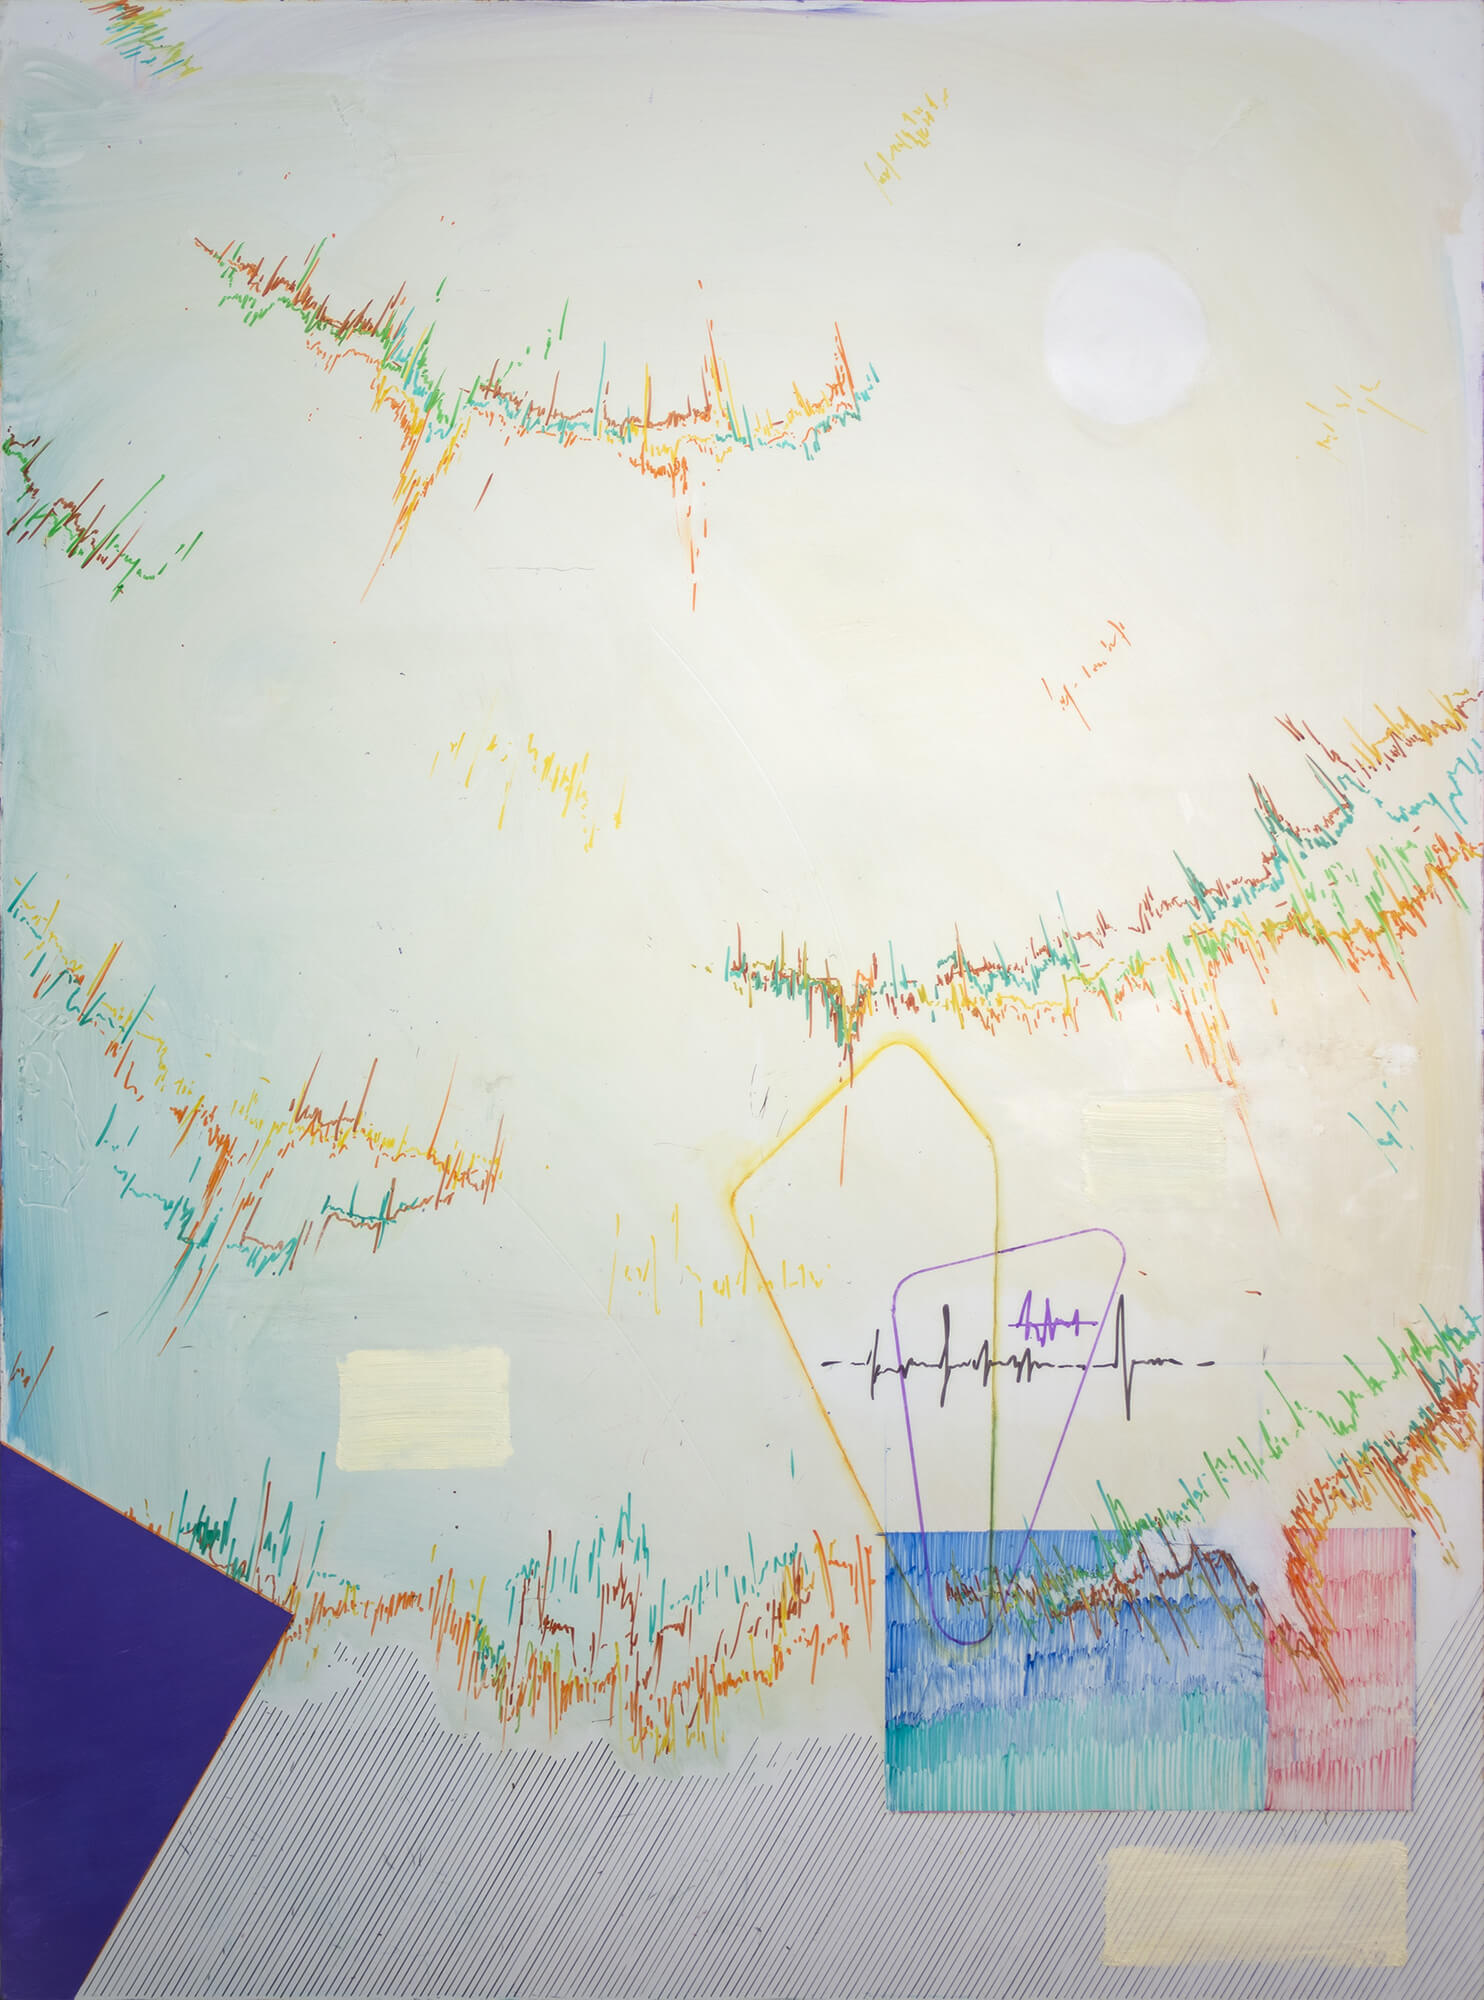 AYNM-REI VI, huile et feutre sur tableau effaçable, 120 x 90 cm, 2020, crédit photo : Théotime Dupas